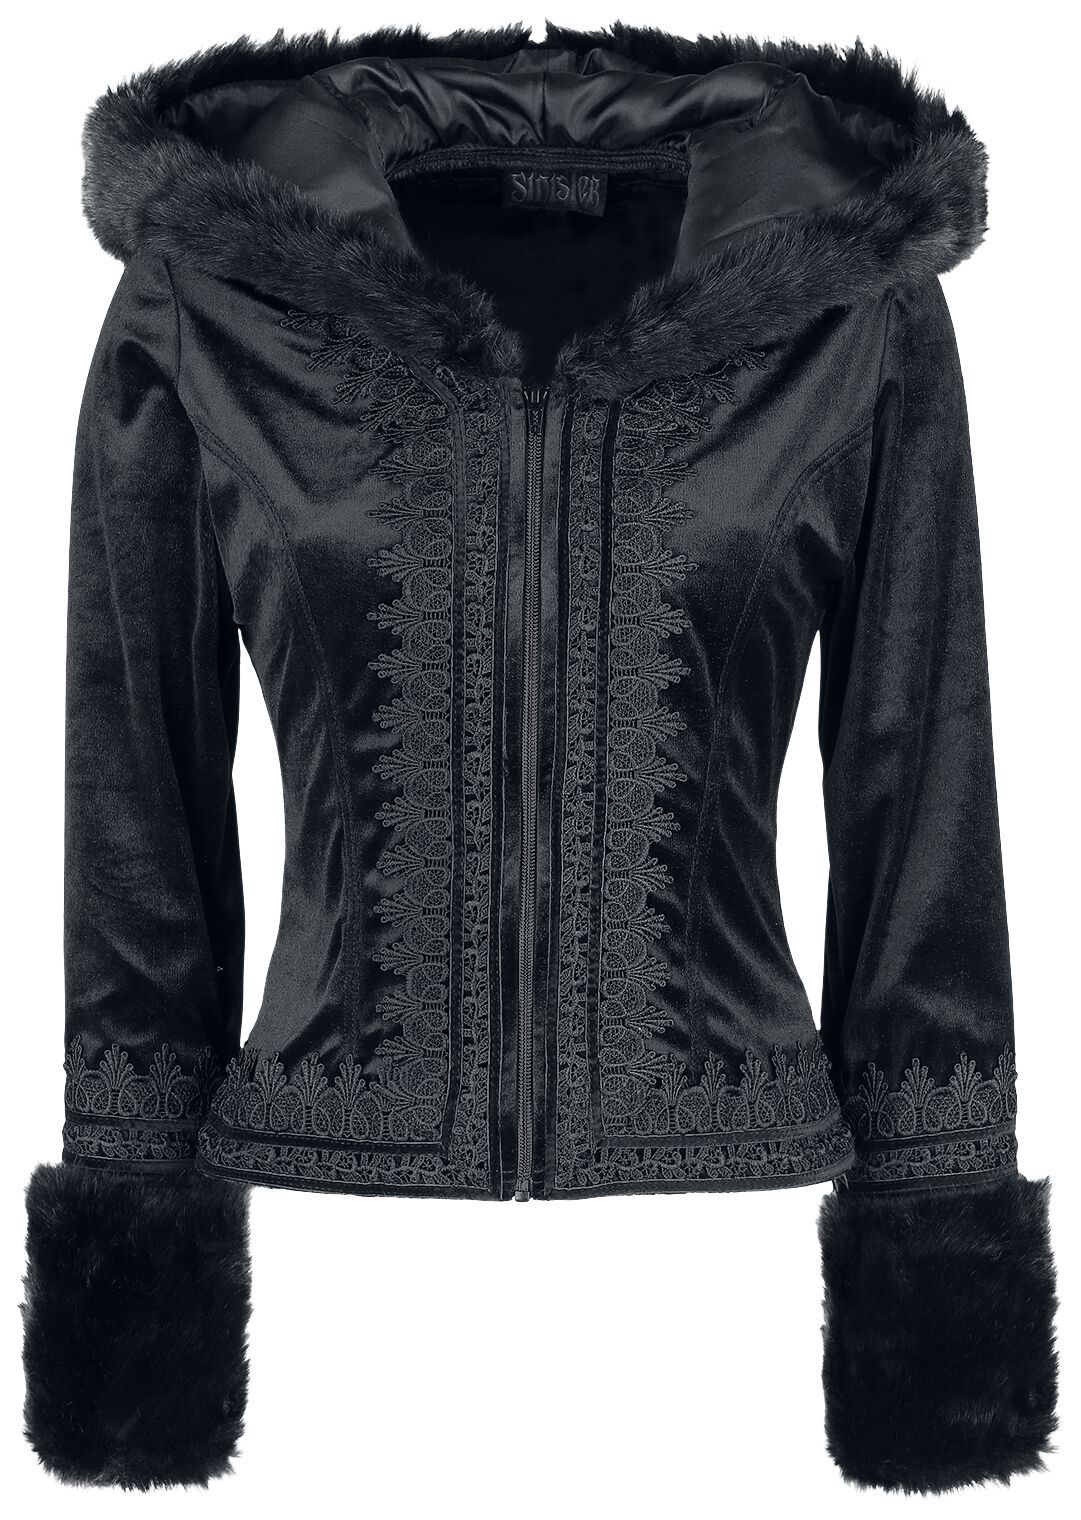 Sinister Gothic - Mittelalter Übergangsjacke - Gothic Jacket - XL - für Damen - Größe XL - schwarz